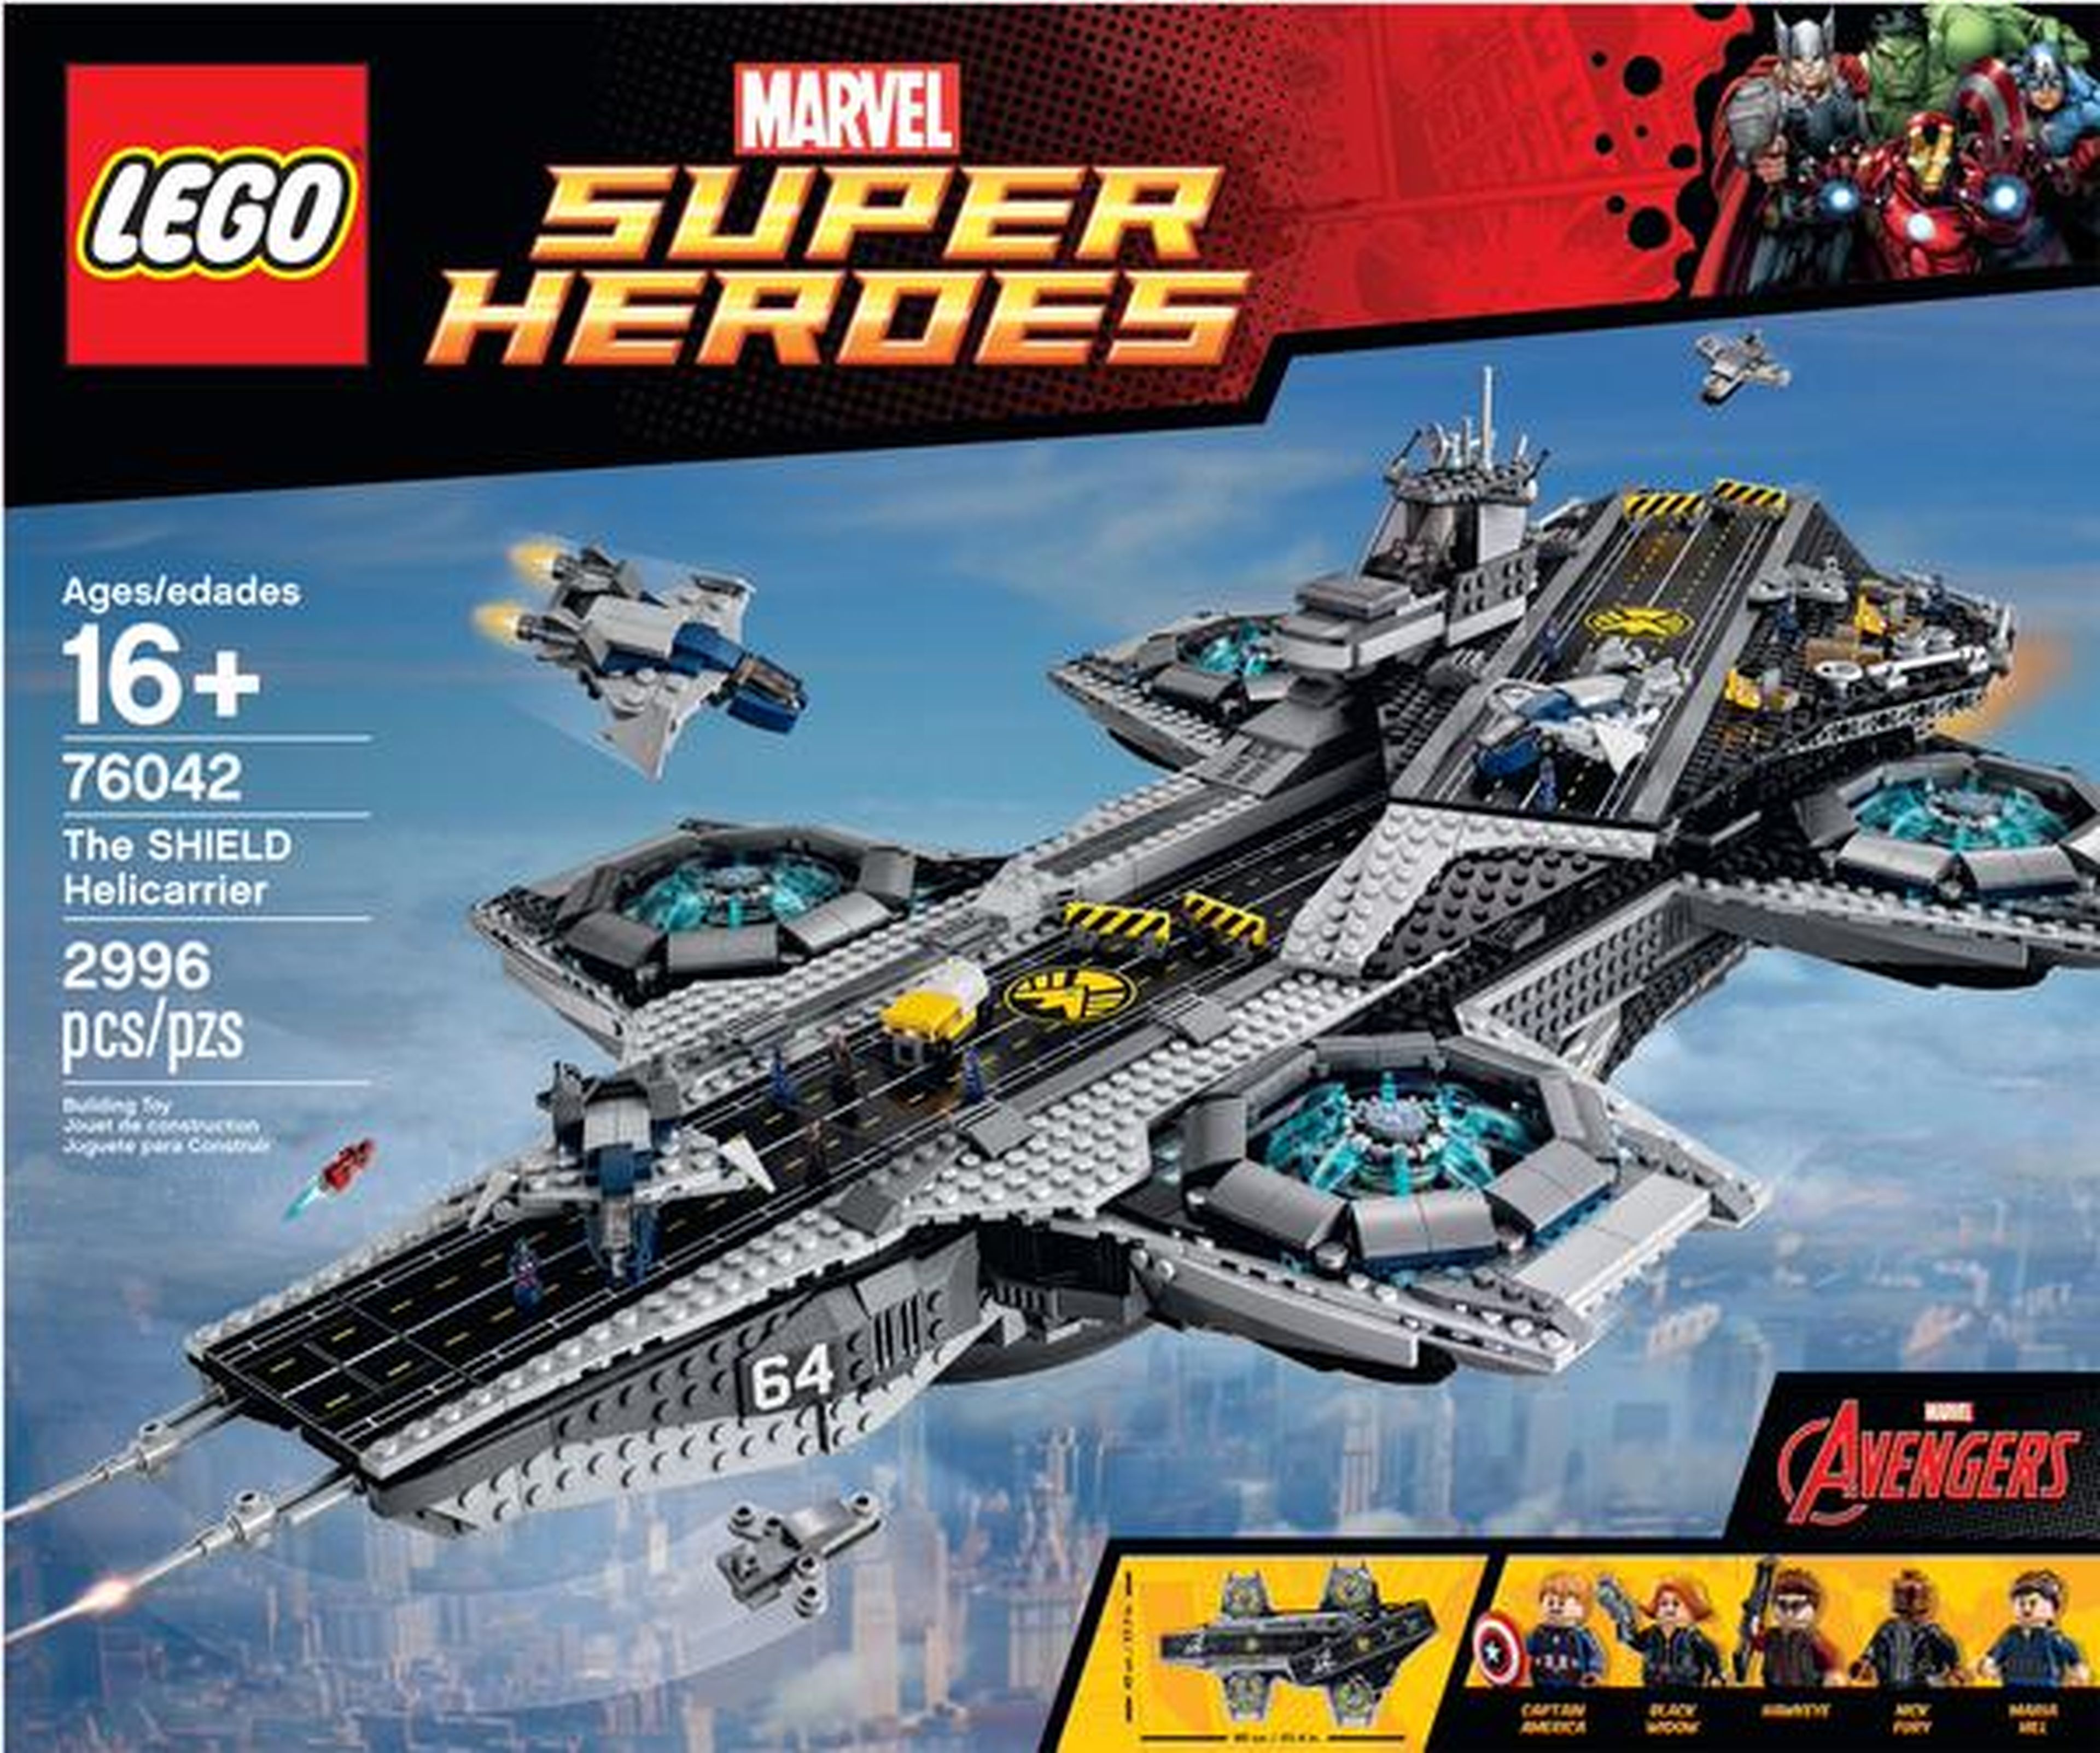 LEGO revela su Helitransporte de S.H.I.E.L.D. de Los Vengadores